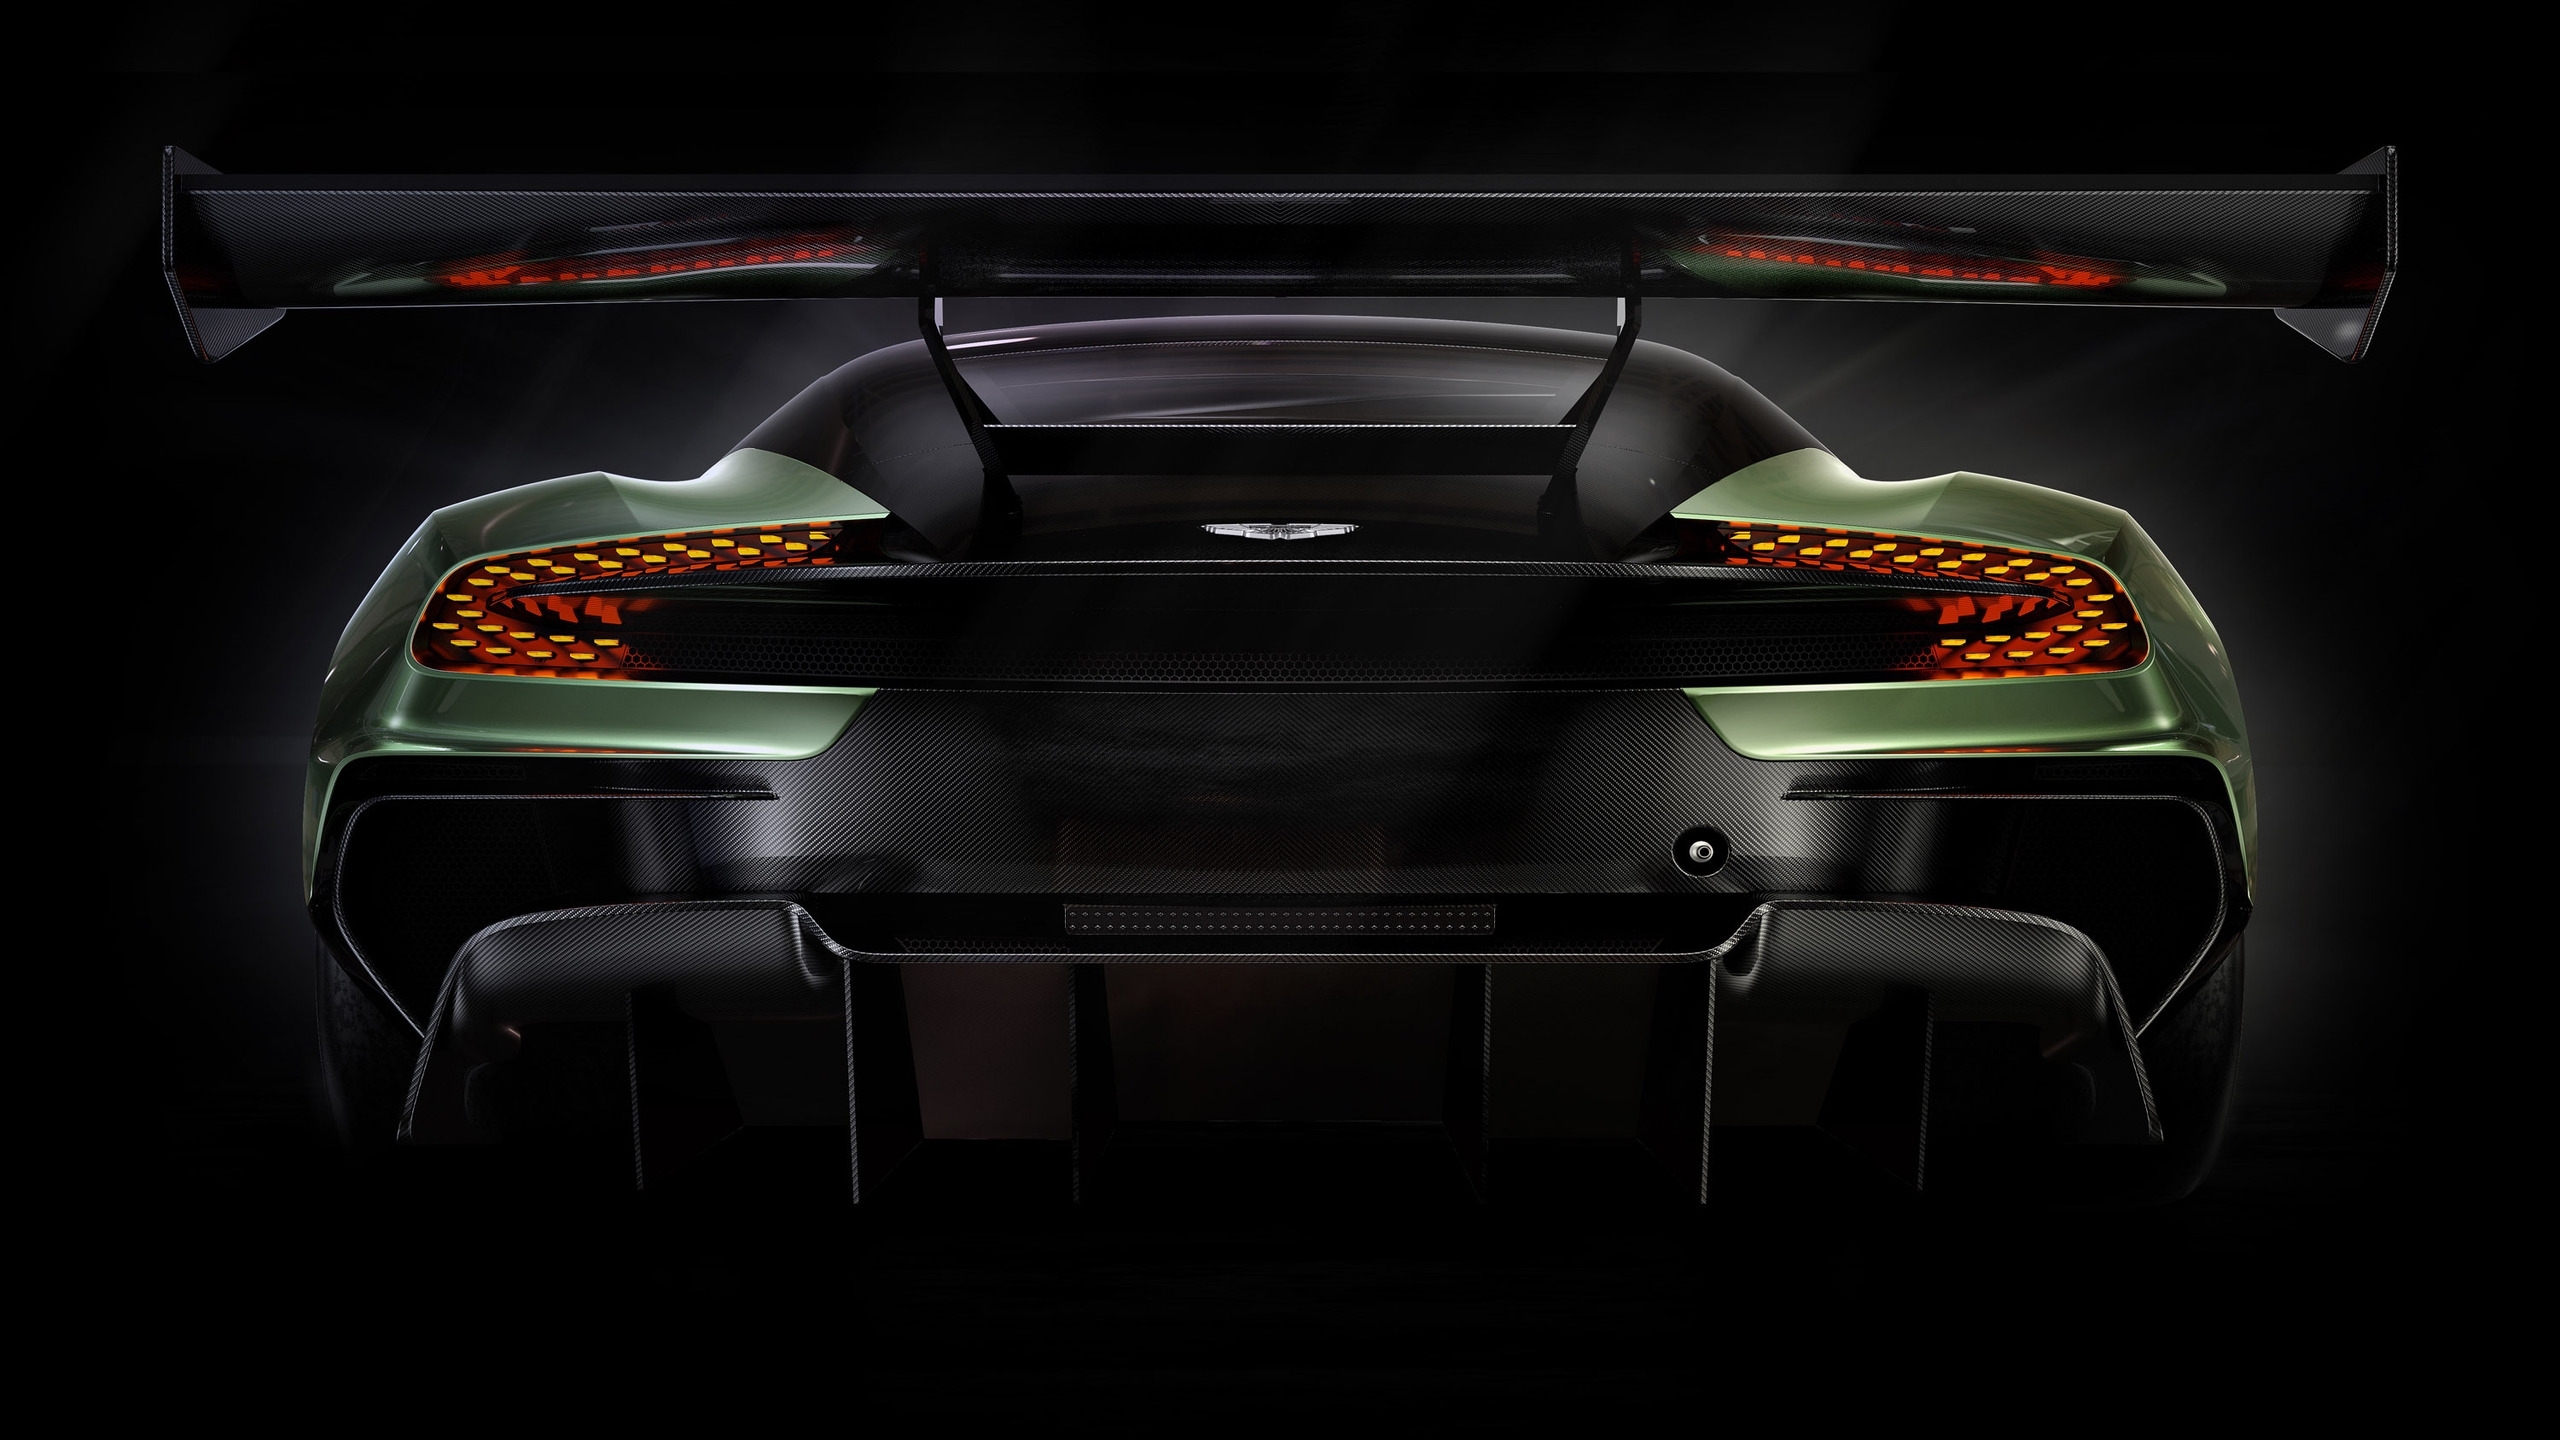 Rear of Aston Martin Vulcan for 2560x1440 HDTV resolution